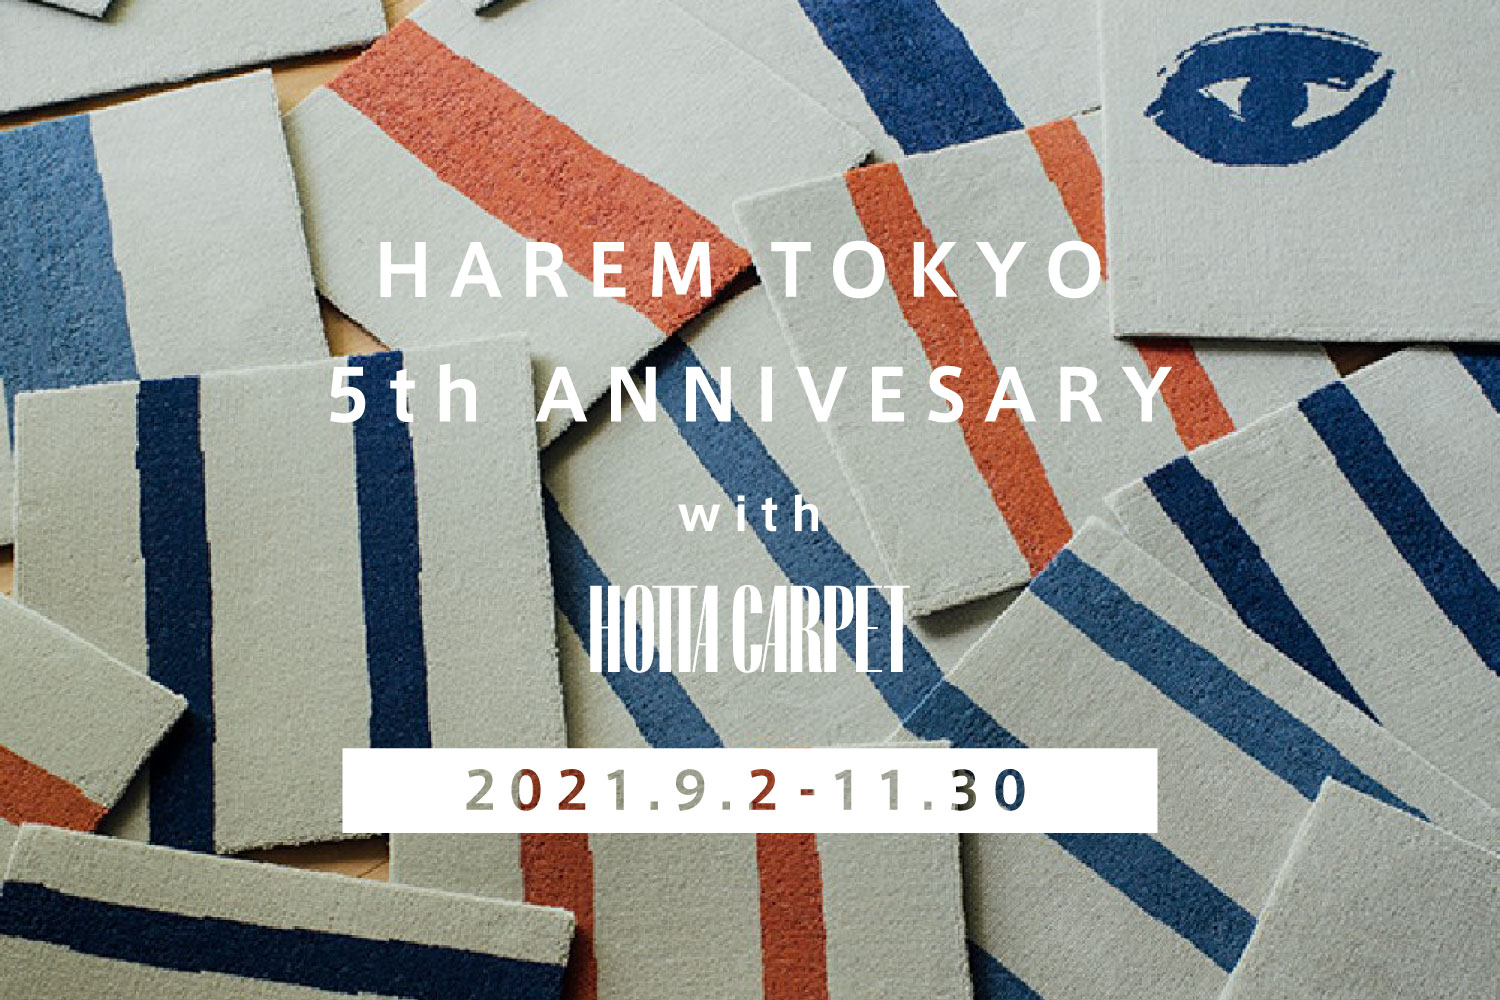 ローソファ専門店HAREM東京店5周年イベント,ダンナチェア展示